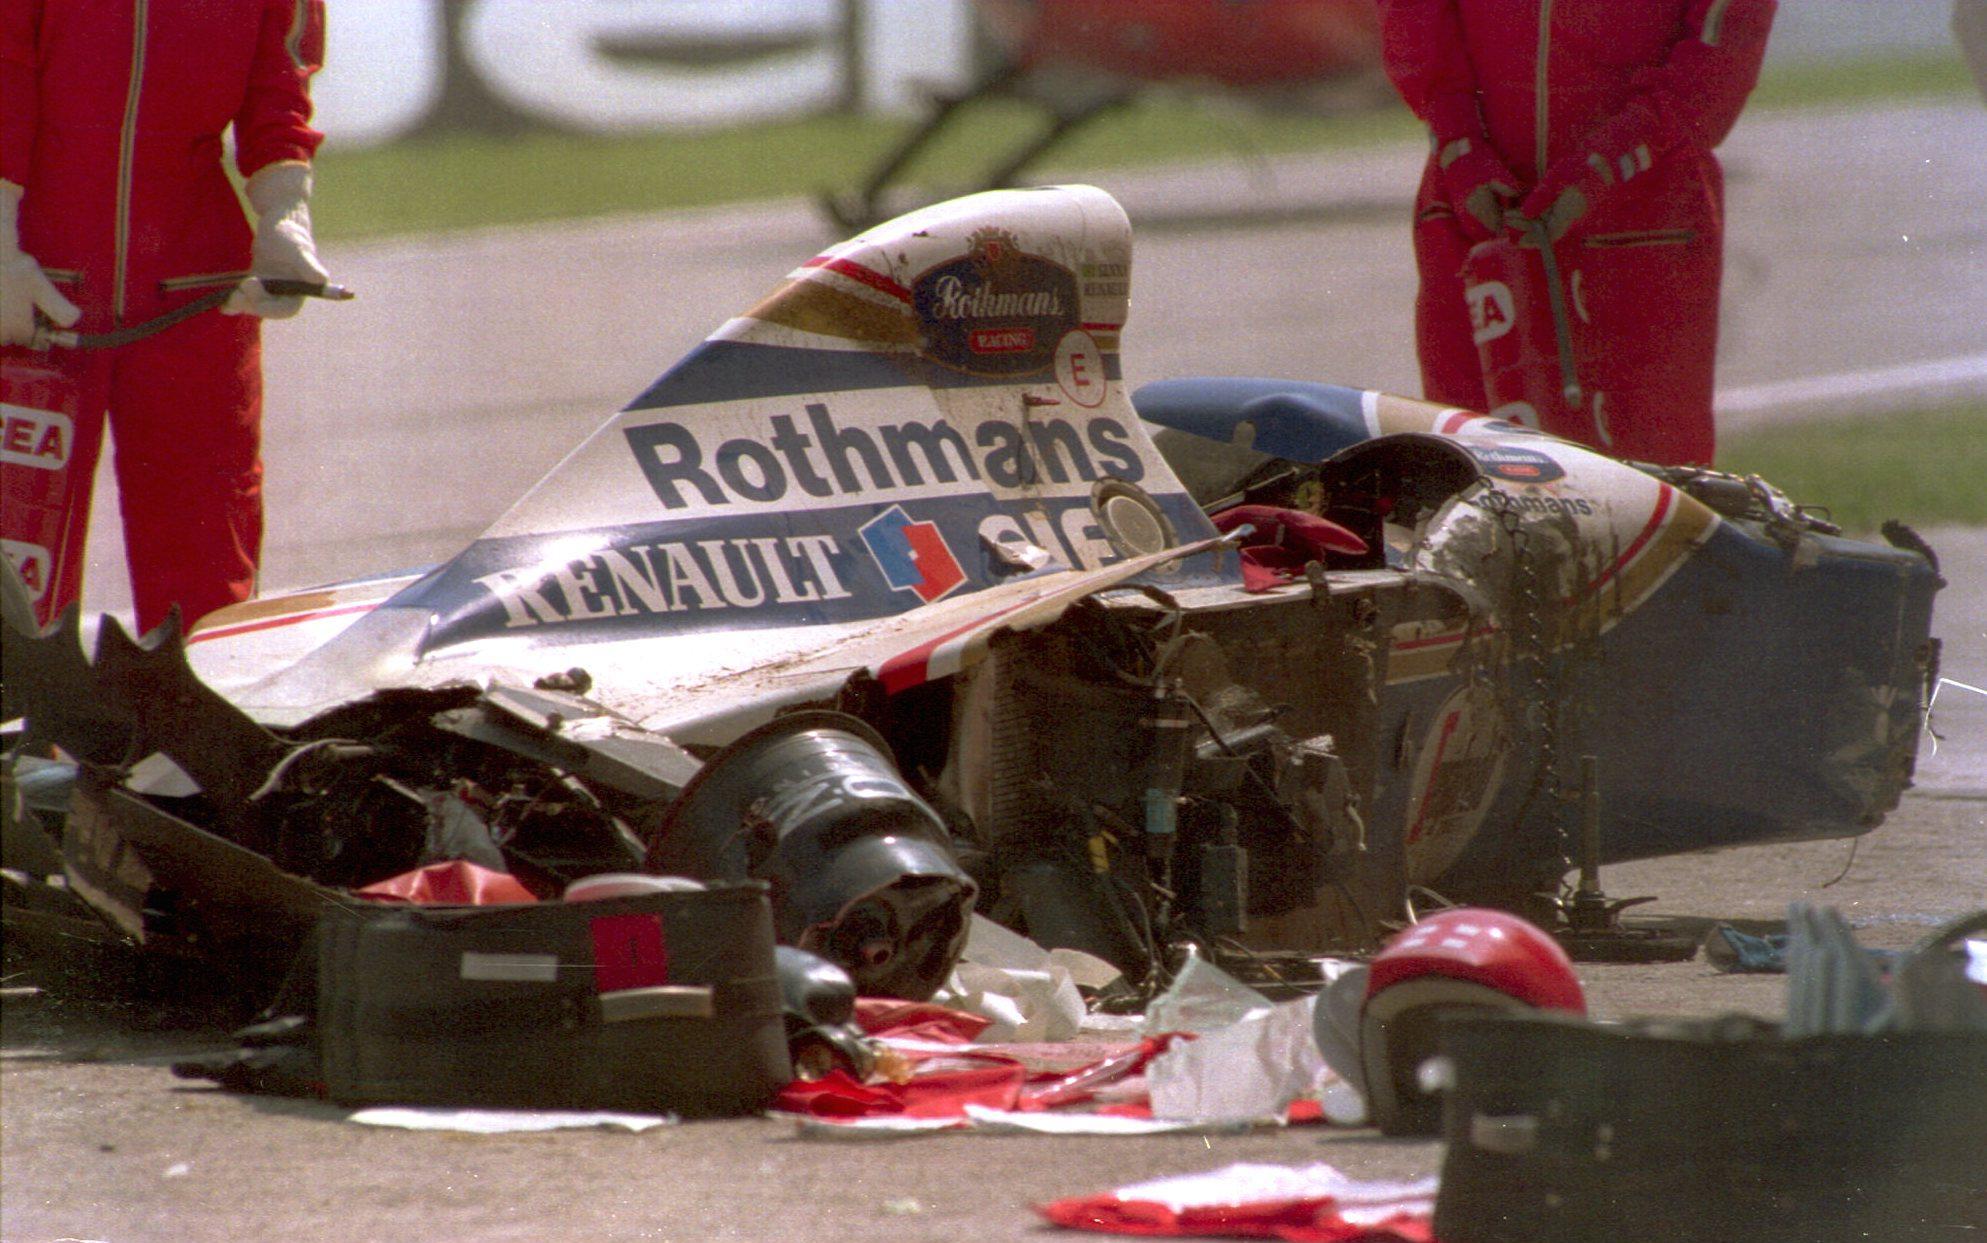 Senna crashed at Imola and died on 1 May 1994 at the age of 34